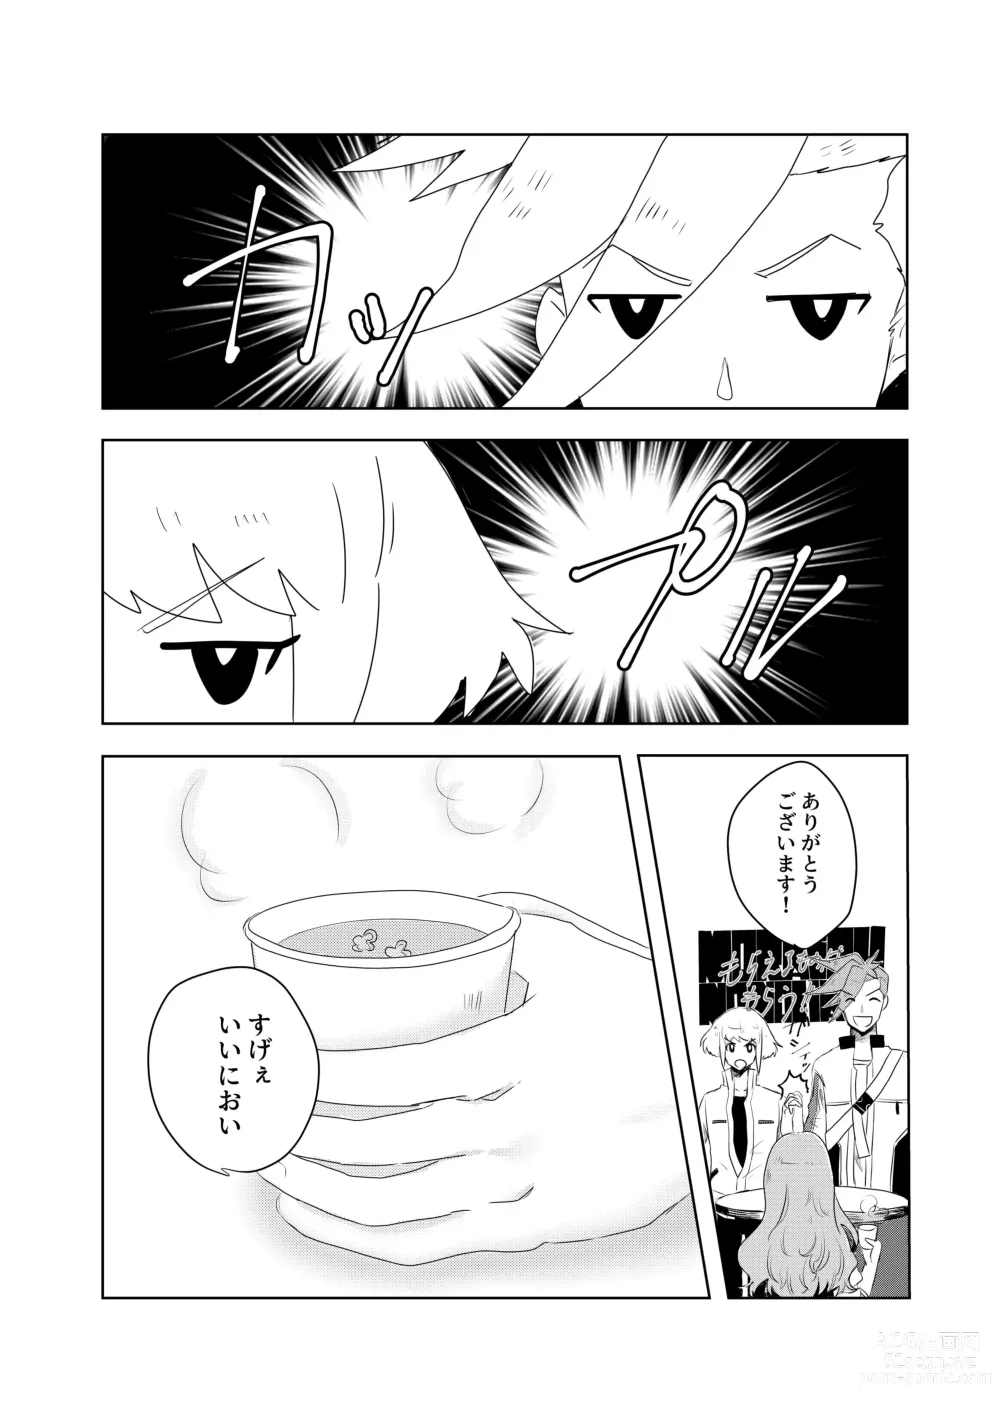 Page 31 of doujinshi Ohayou, Oyasumi, Mata Ashita.